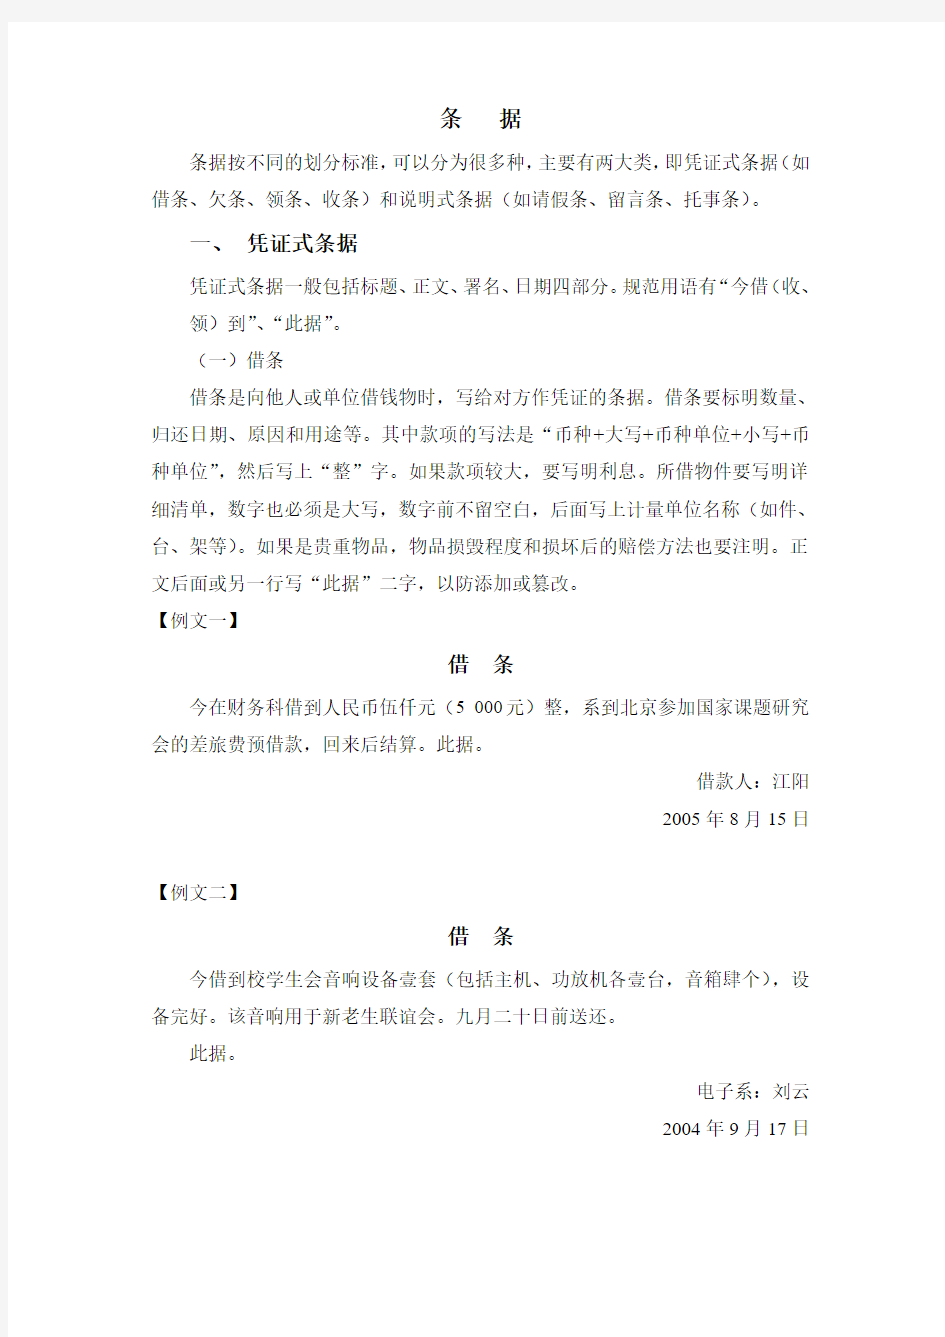 中文应用写作 条据